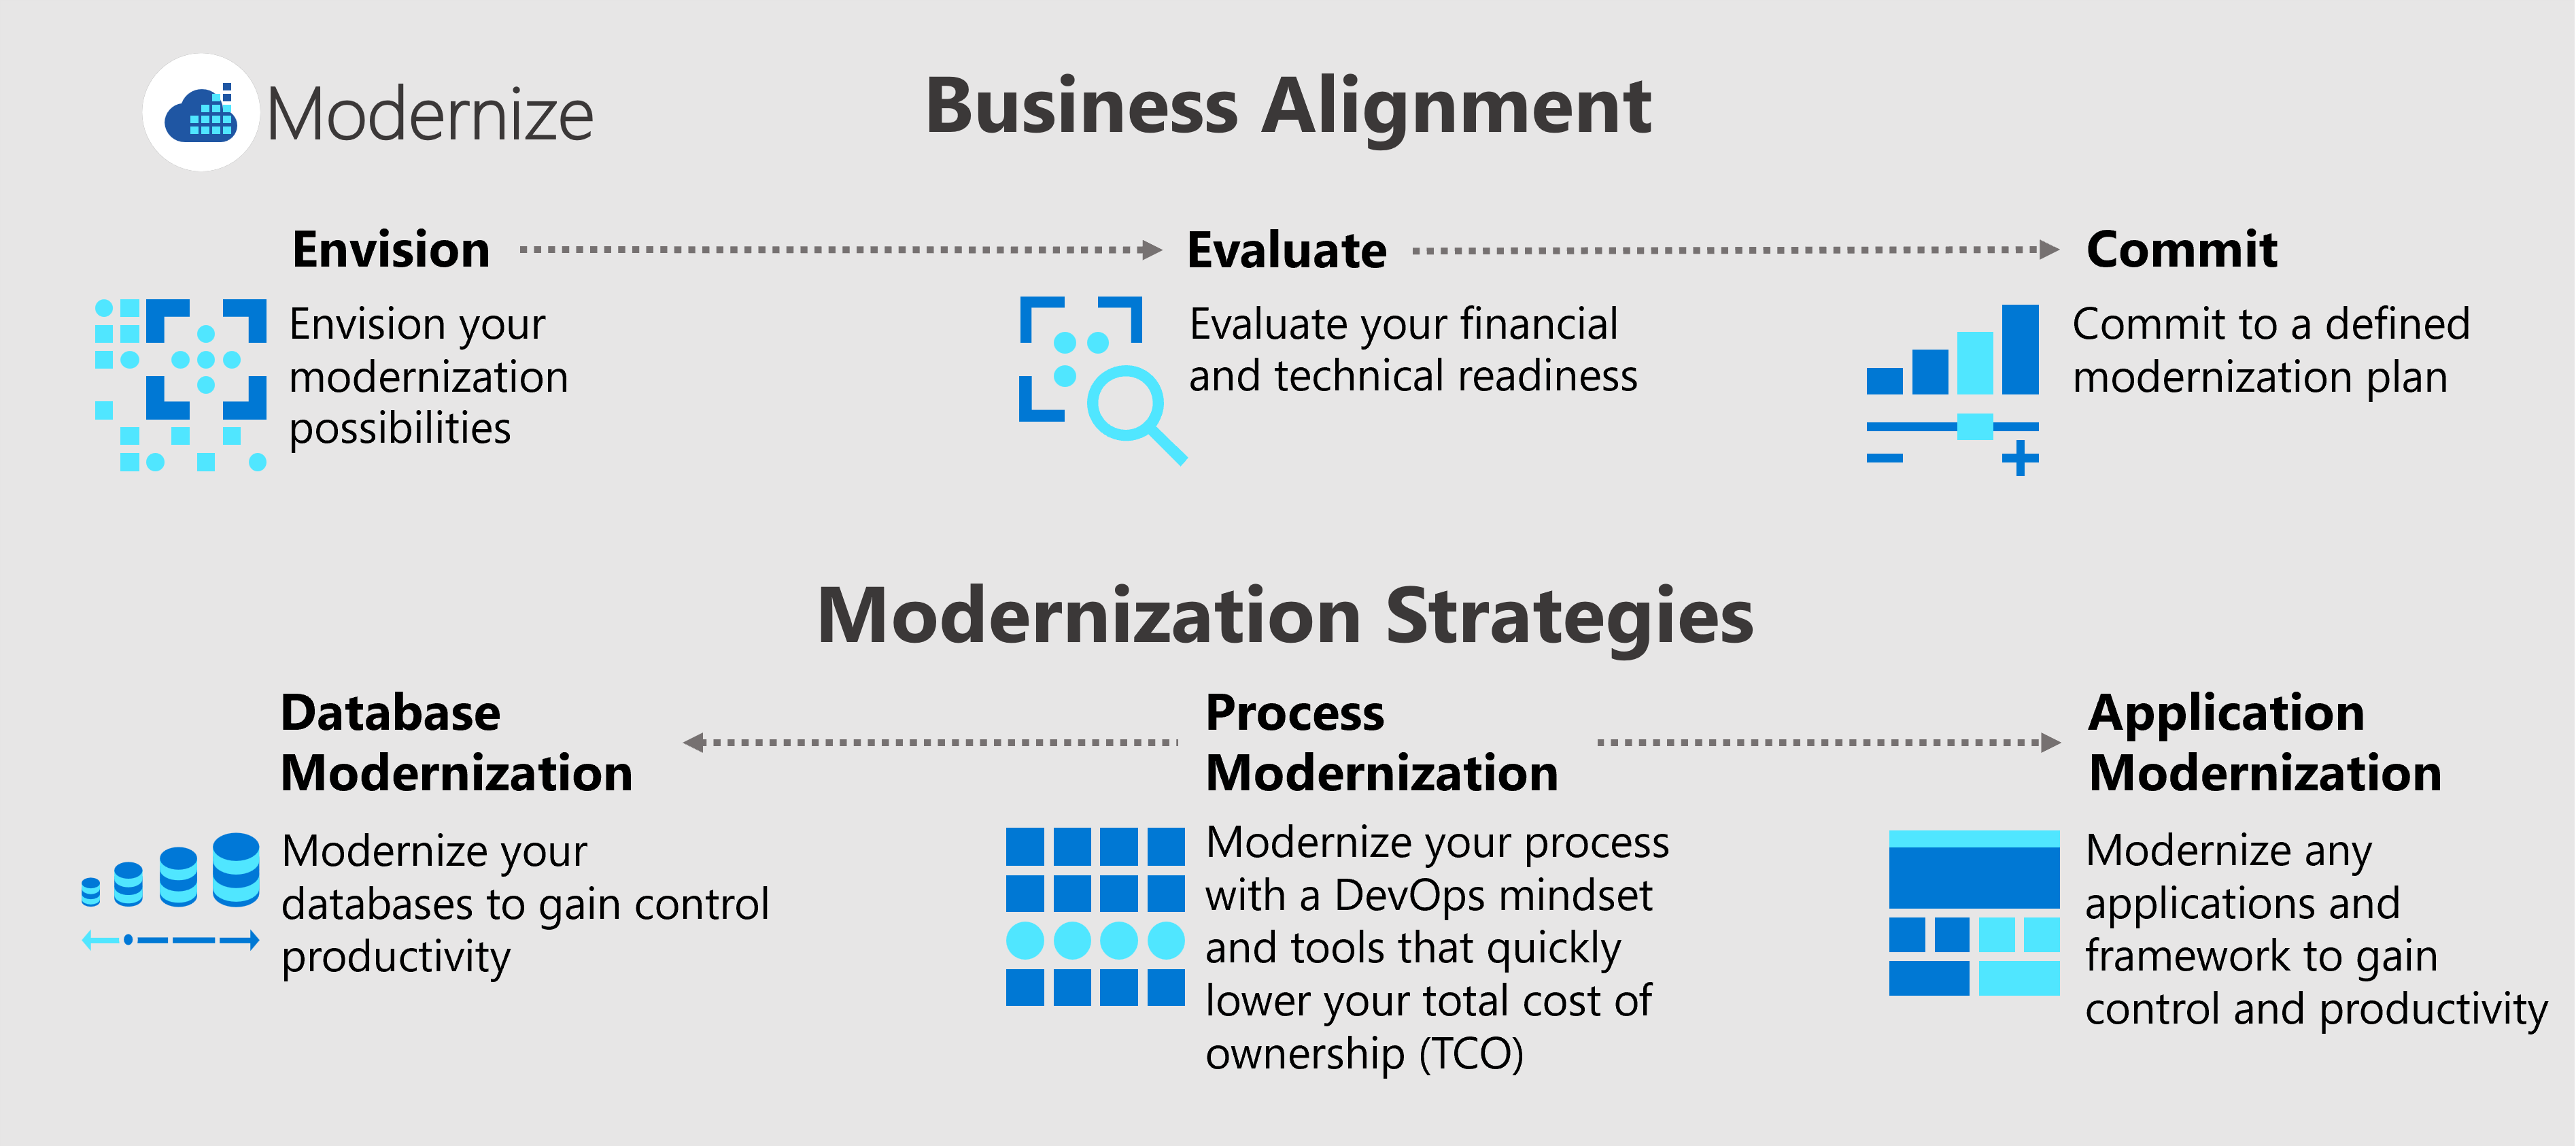 Diagrama que muestra tres procesos de alineación de negocios (previsión, evaluación y aplicación) y tres estrategias de modernización (modernización del proceso, la aplicación y la base de datos).